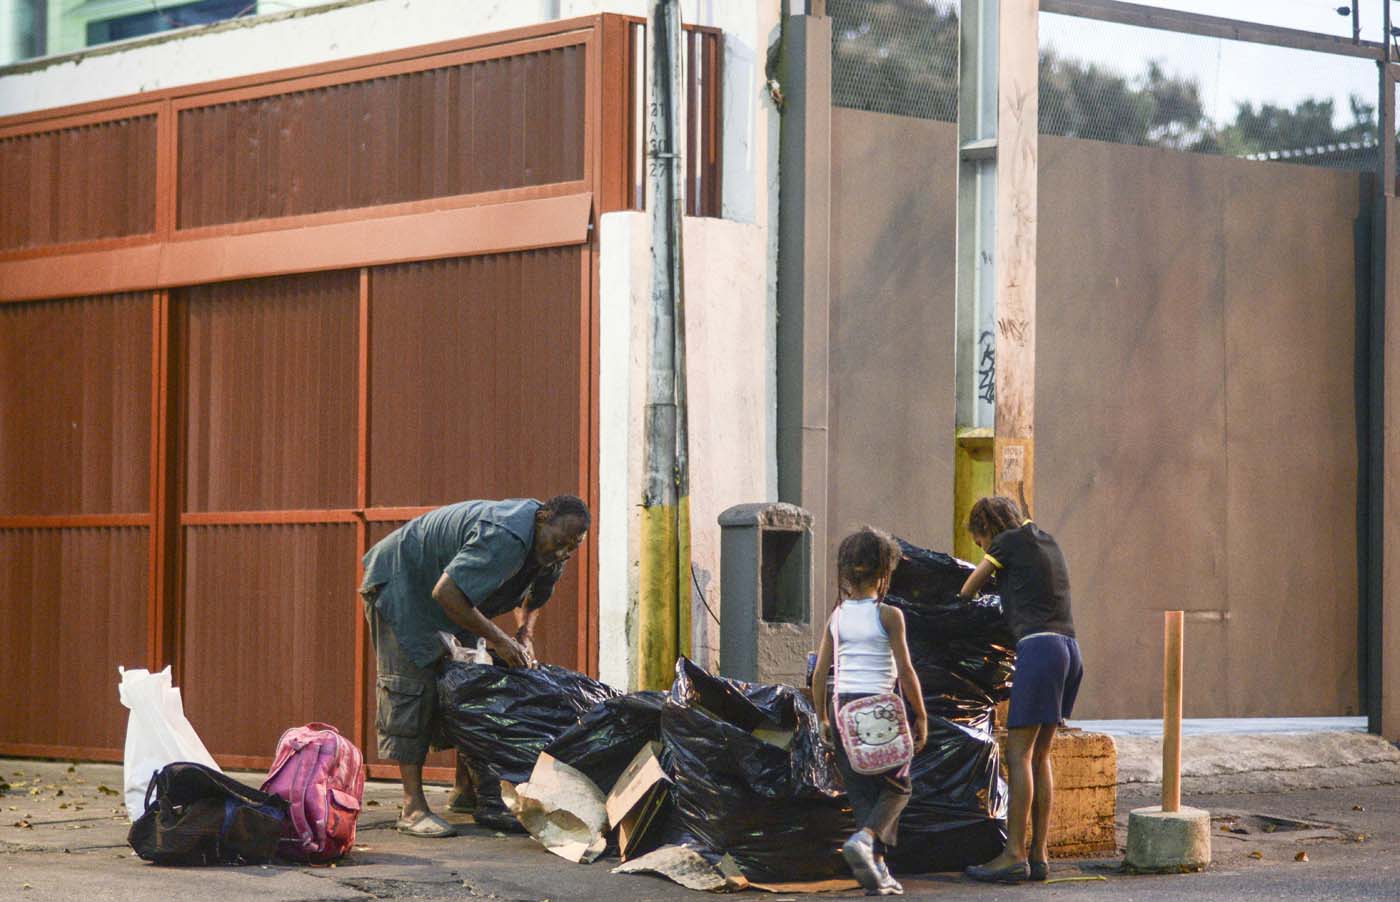  Un hombre y dos niñas escarban en la basura en Caracas  AFP PHOTO / JUAN BARRETO  